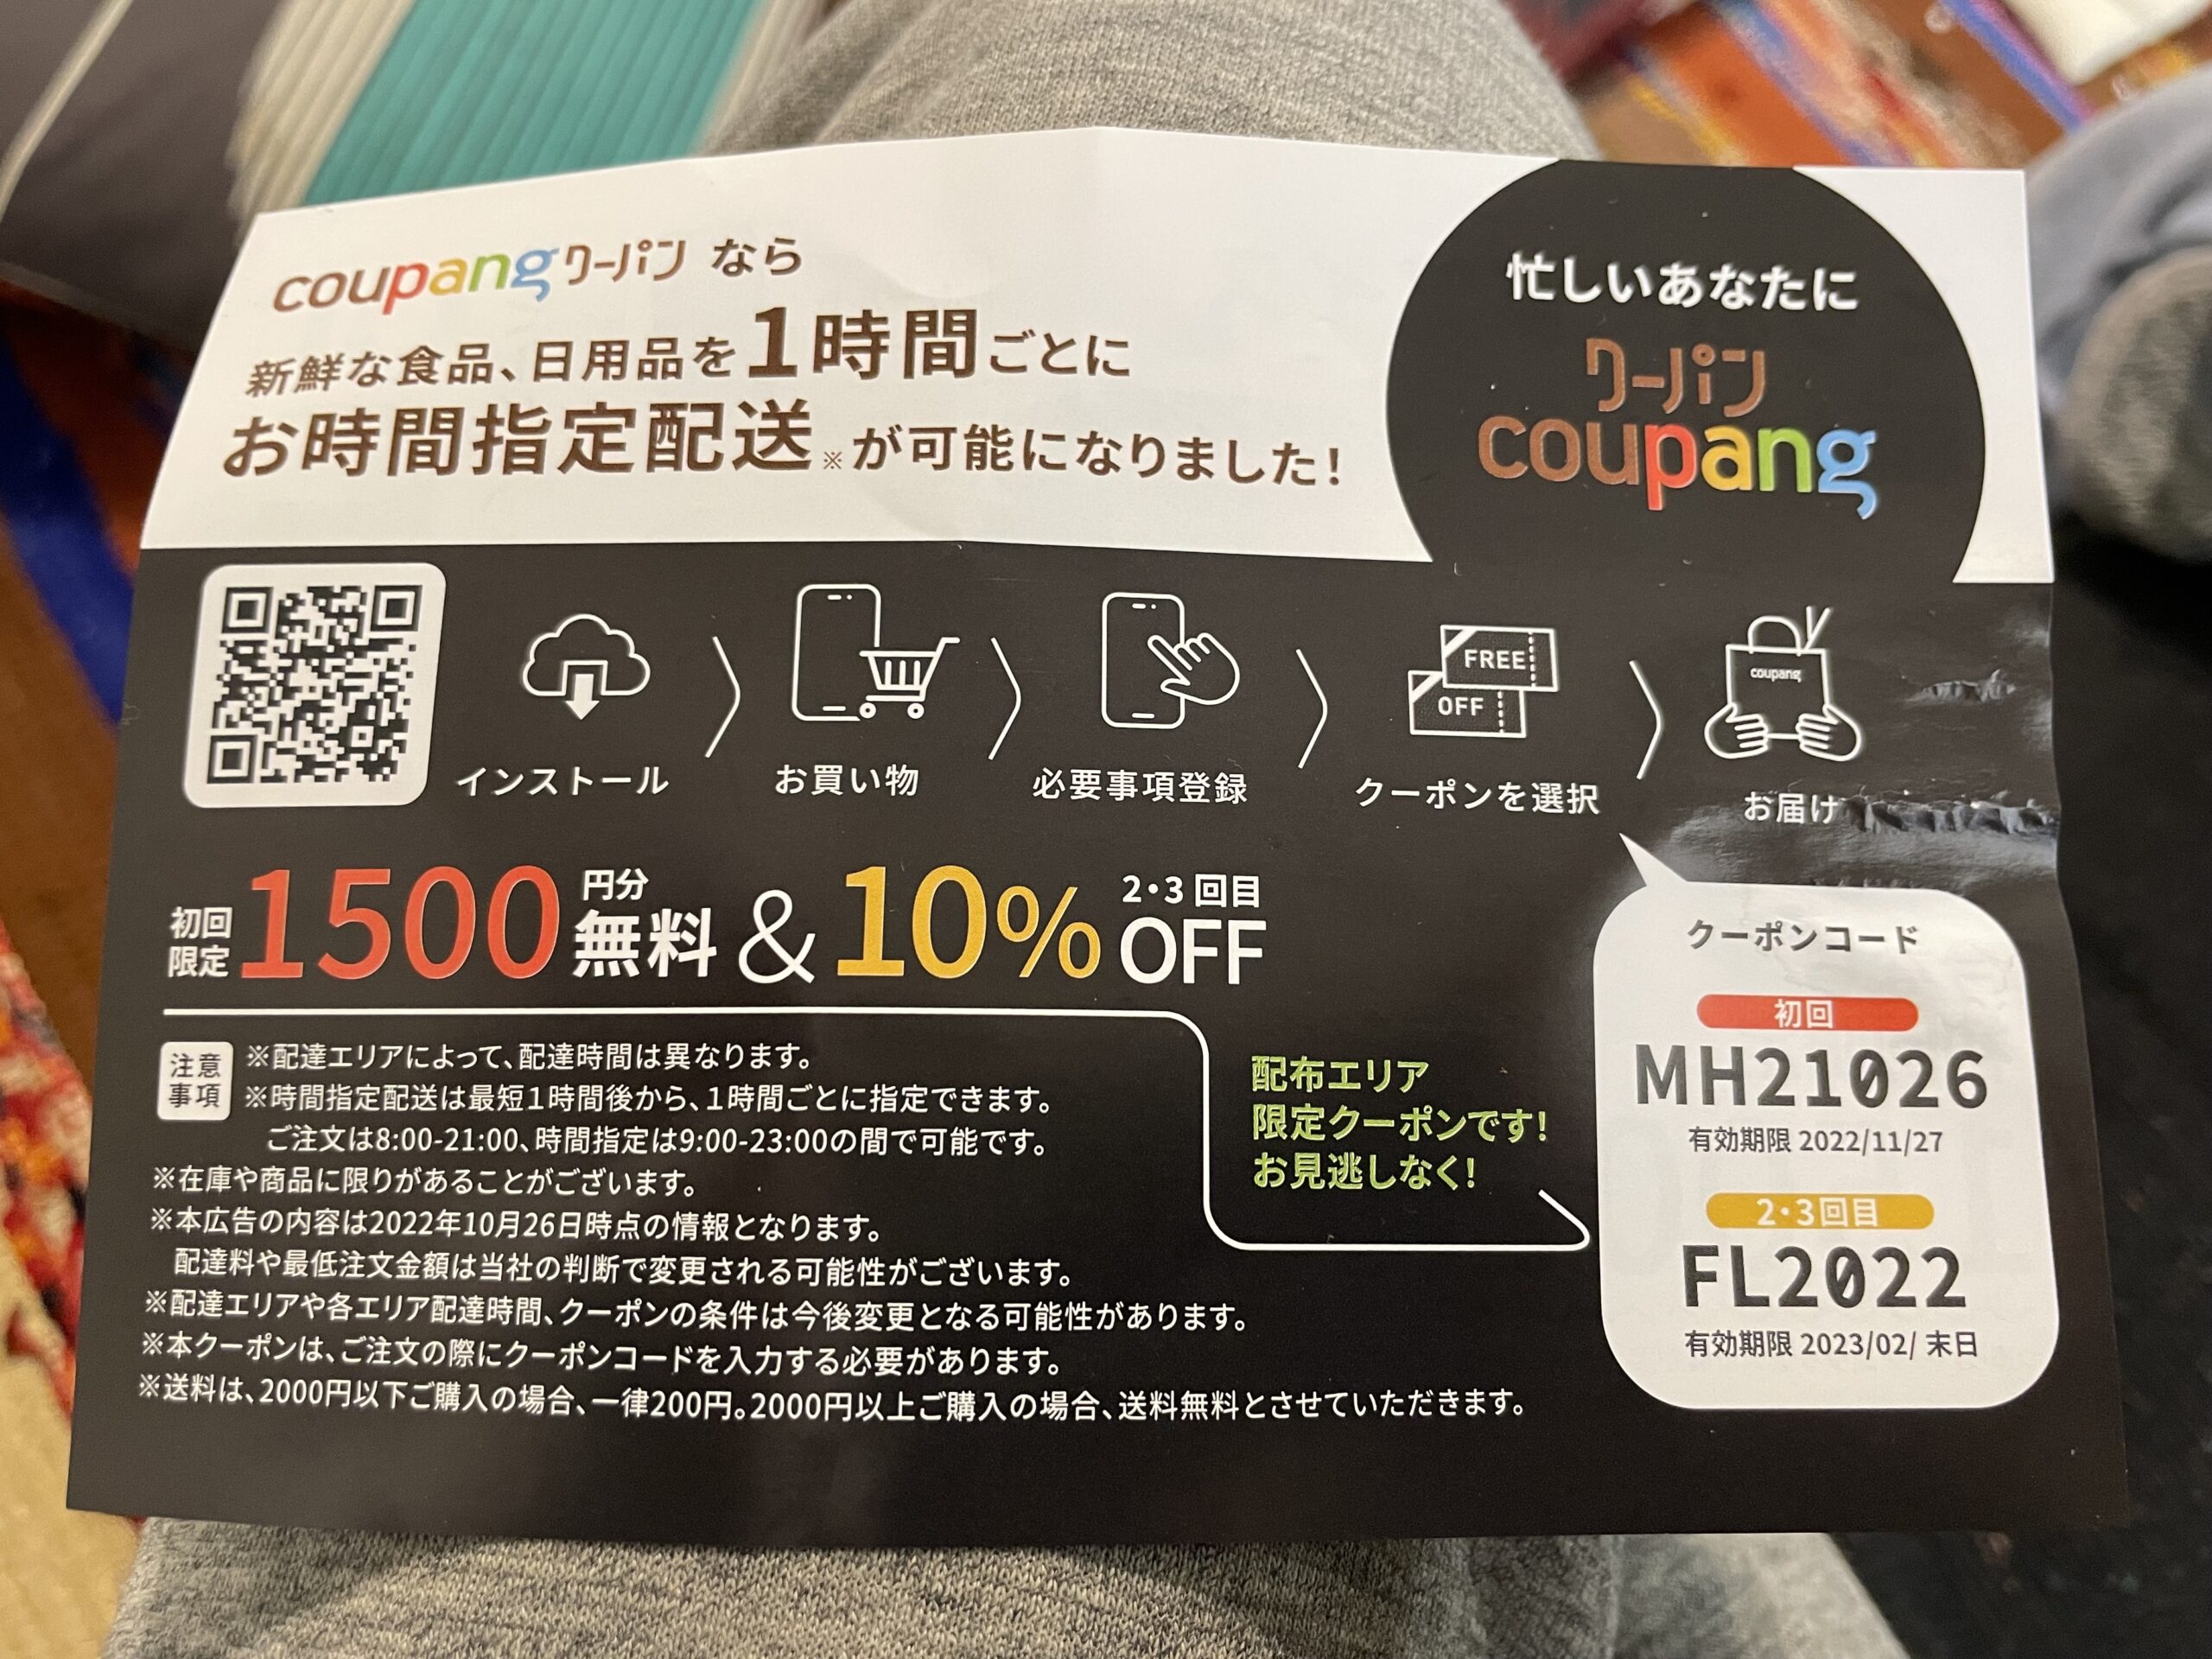 クーパンチラシ限定クーポンで1500円オフ